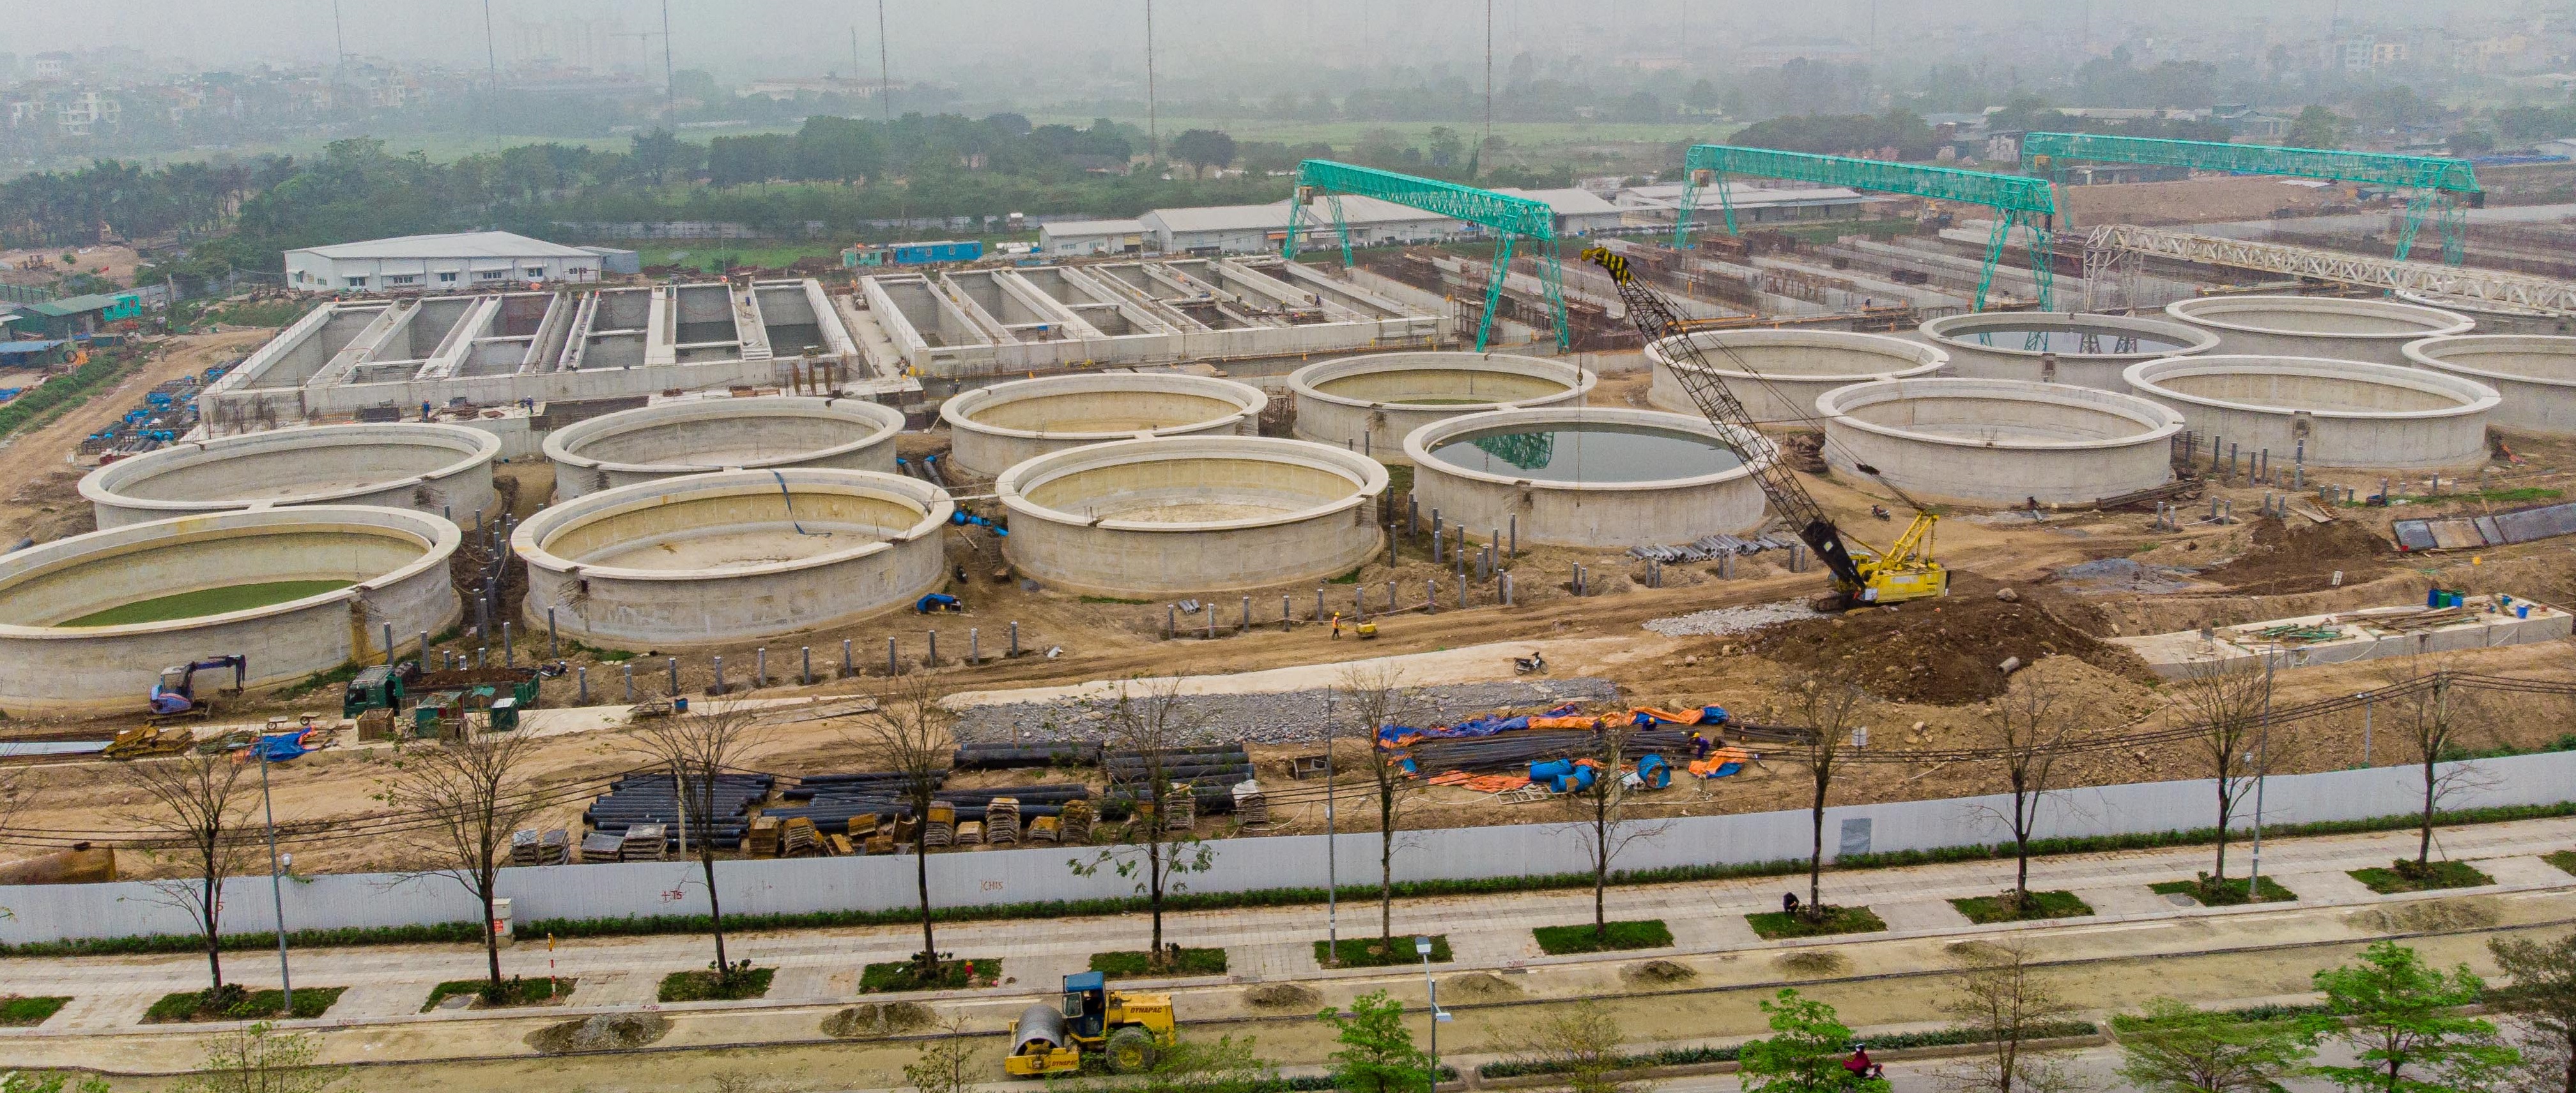 Nhà máy xử lý nước thải Yên Sở - Gamuda Land - Hà Nội